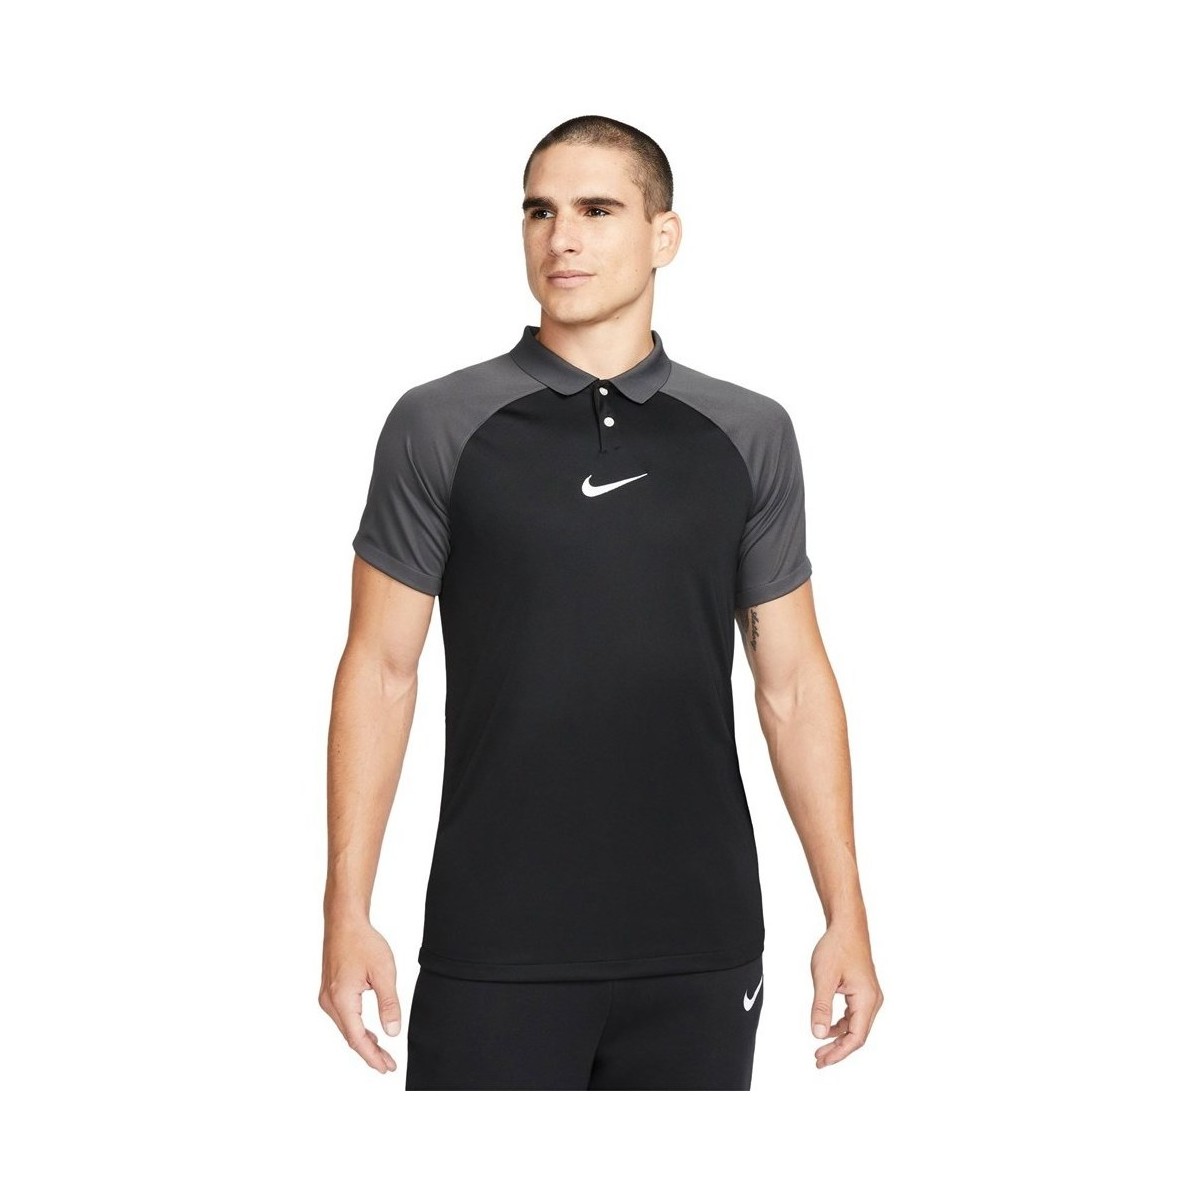 Textil Muži Trička s krátkým rukávem Nike Drifit Academy Pro Černá